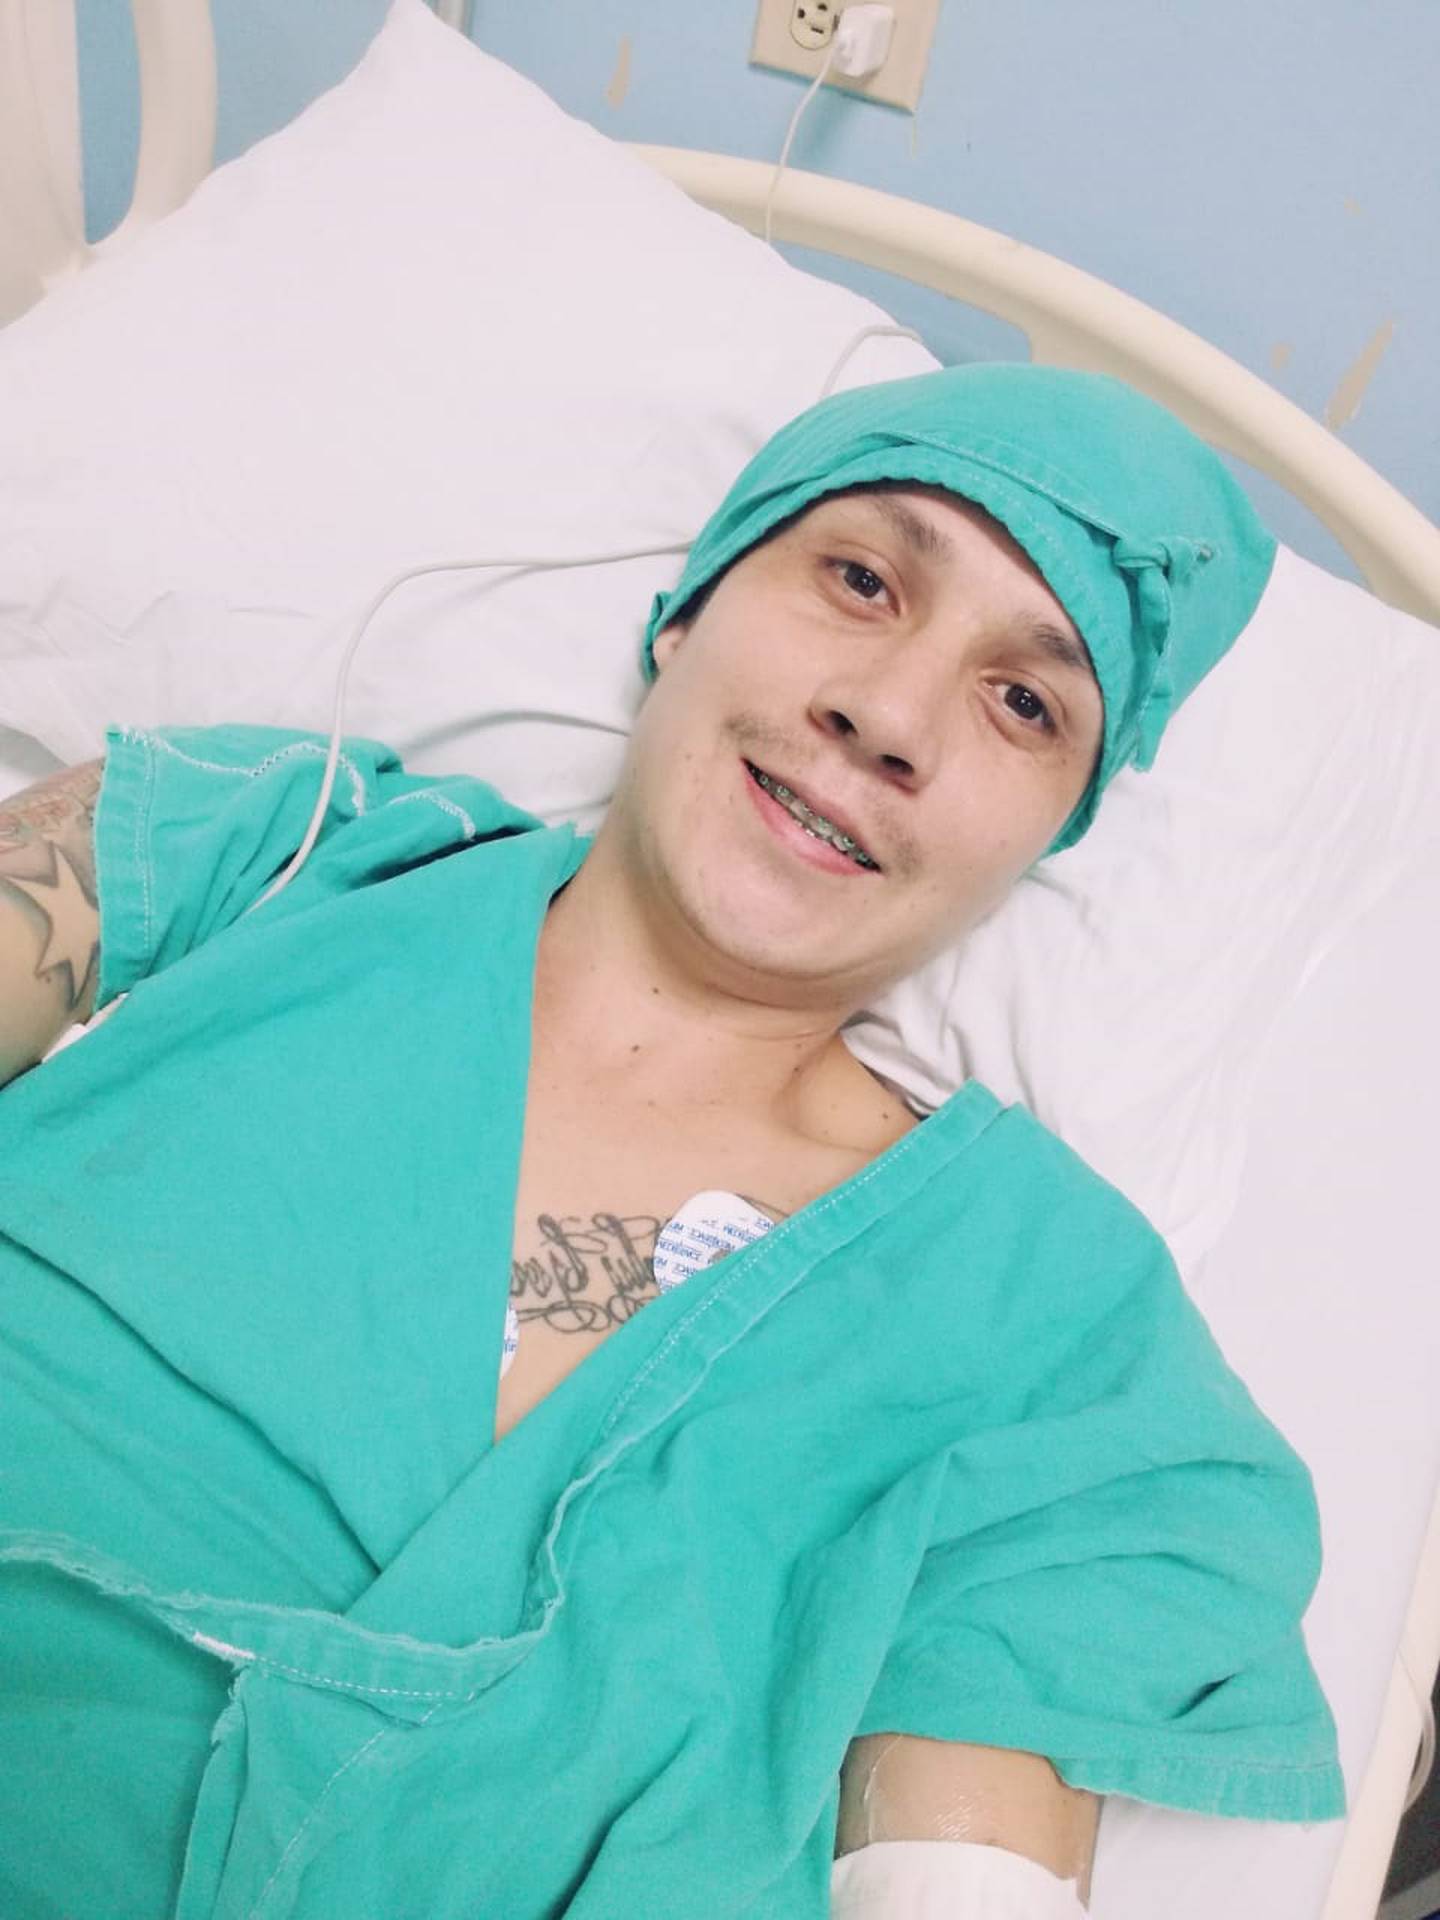 Kenneth Delgado Fernández recibió 11 balazos y vivió para contarla. En la foto en el hospital después de los plomazos.